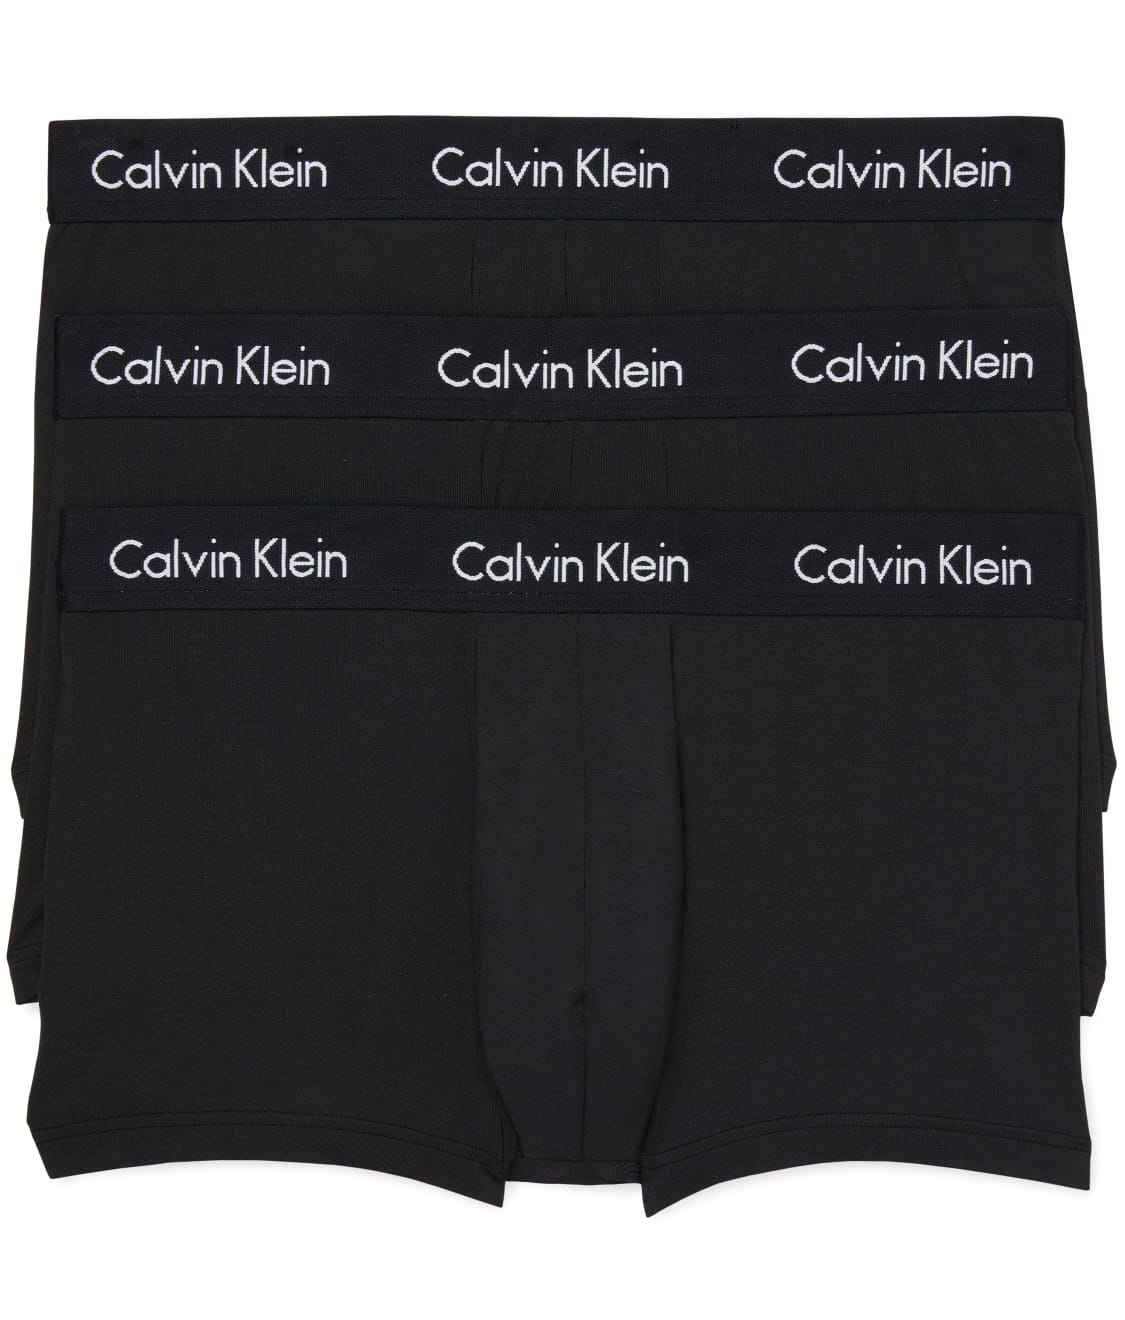 Calvin Klein: Ultra-Soft Modal Trunk 3-Pack NB1866